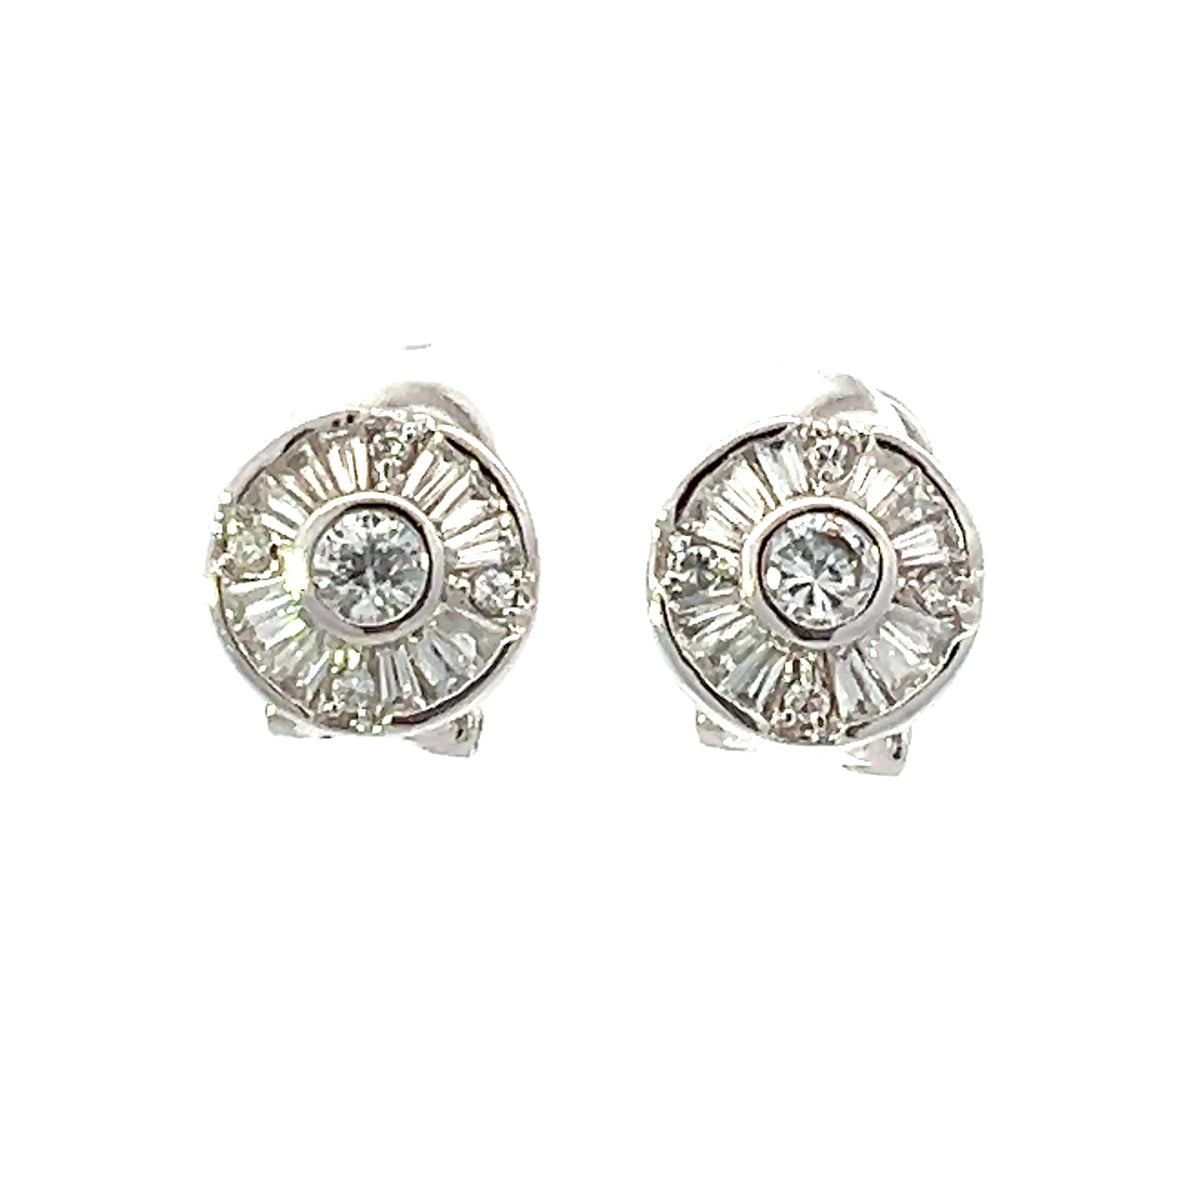 925 Sterling Silver Cubic Zirconia Earrings